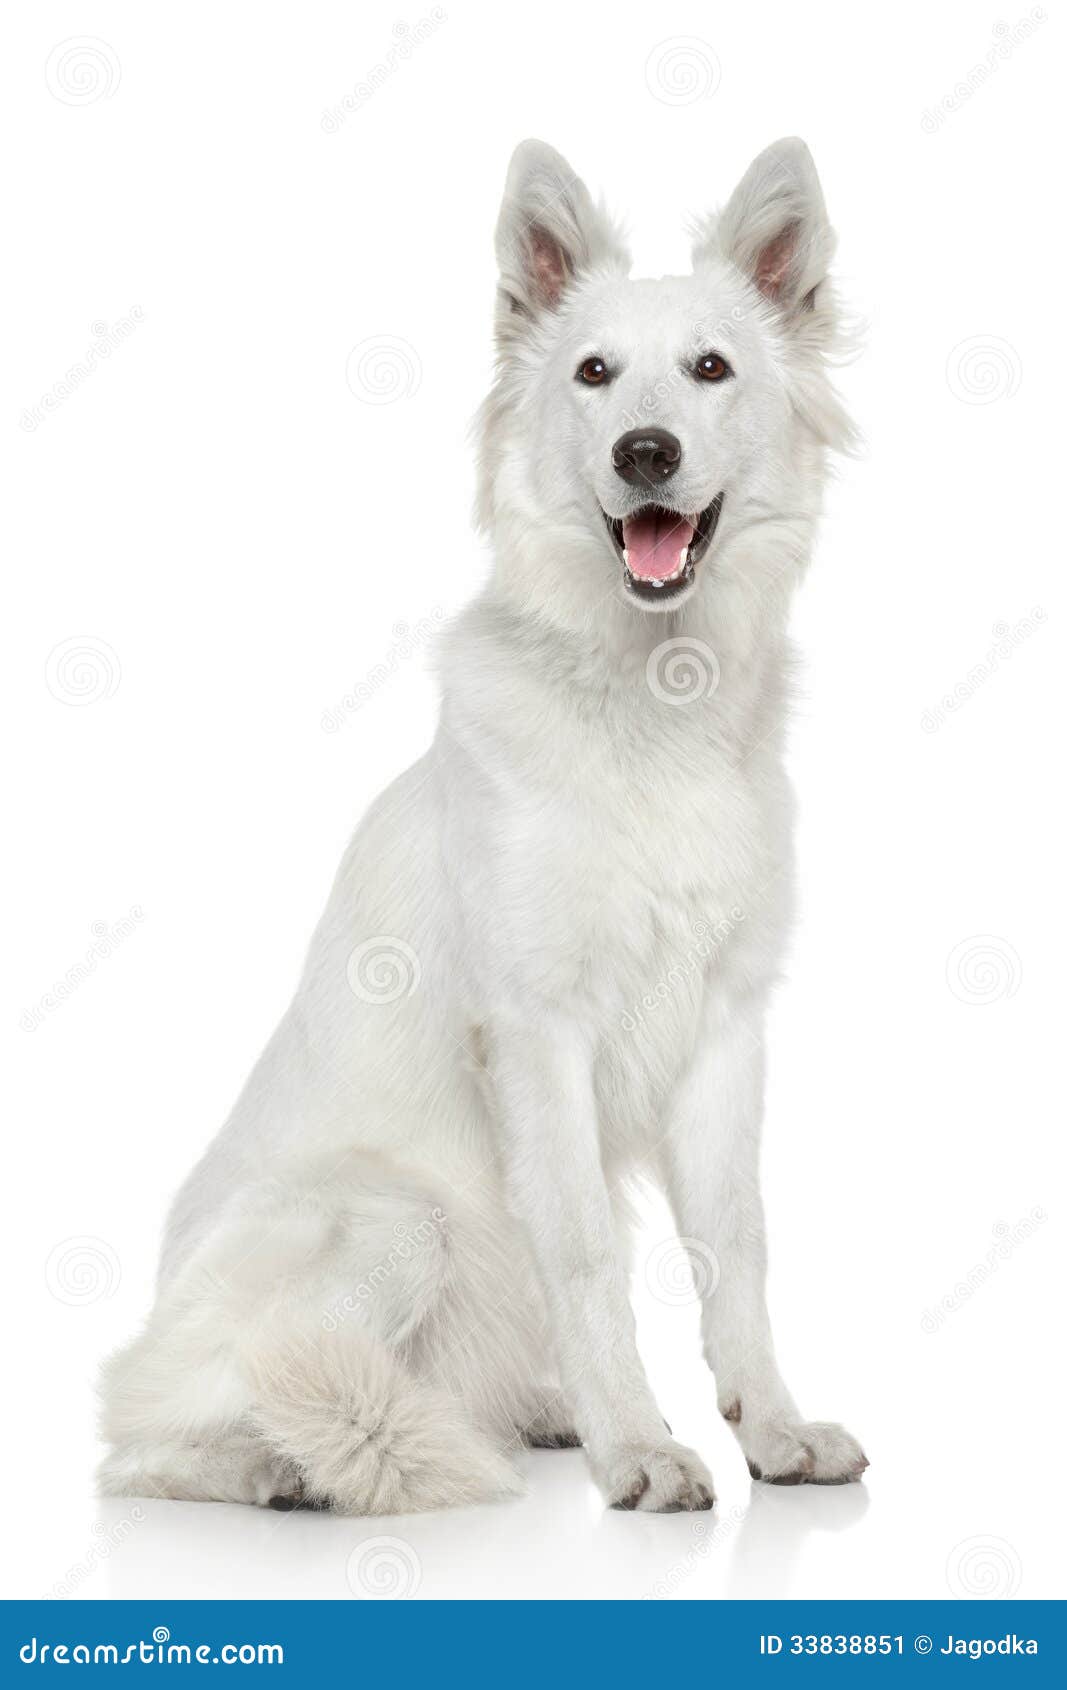 White Swiss Shepherd Dog on White Background Stock Image - Image of ...